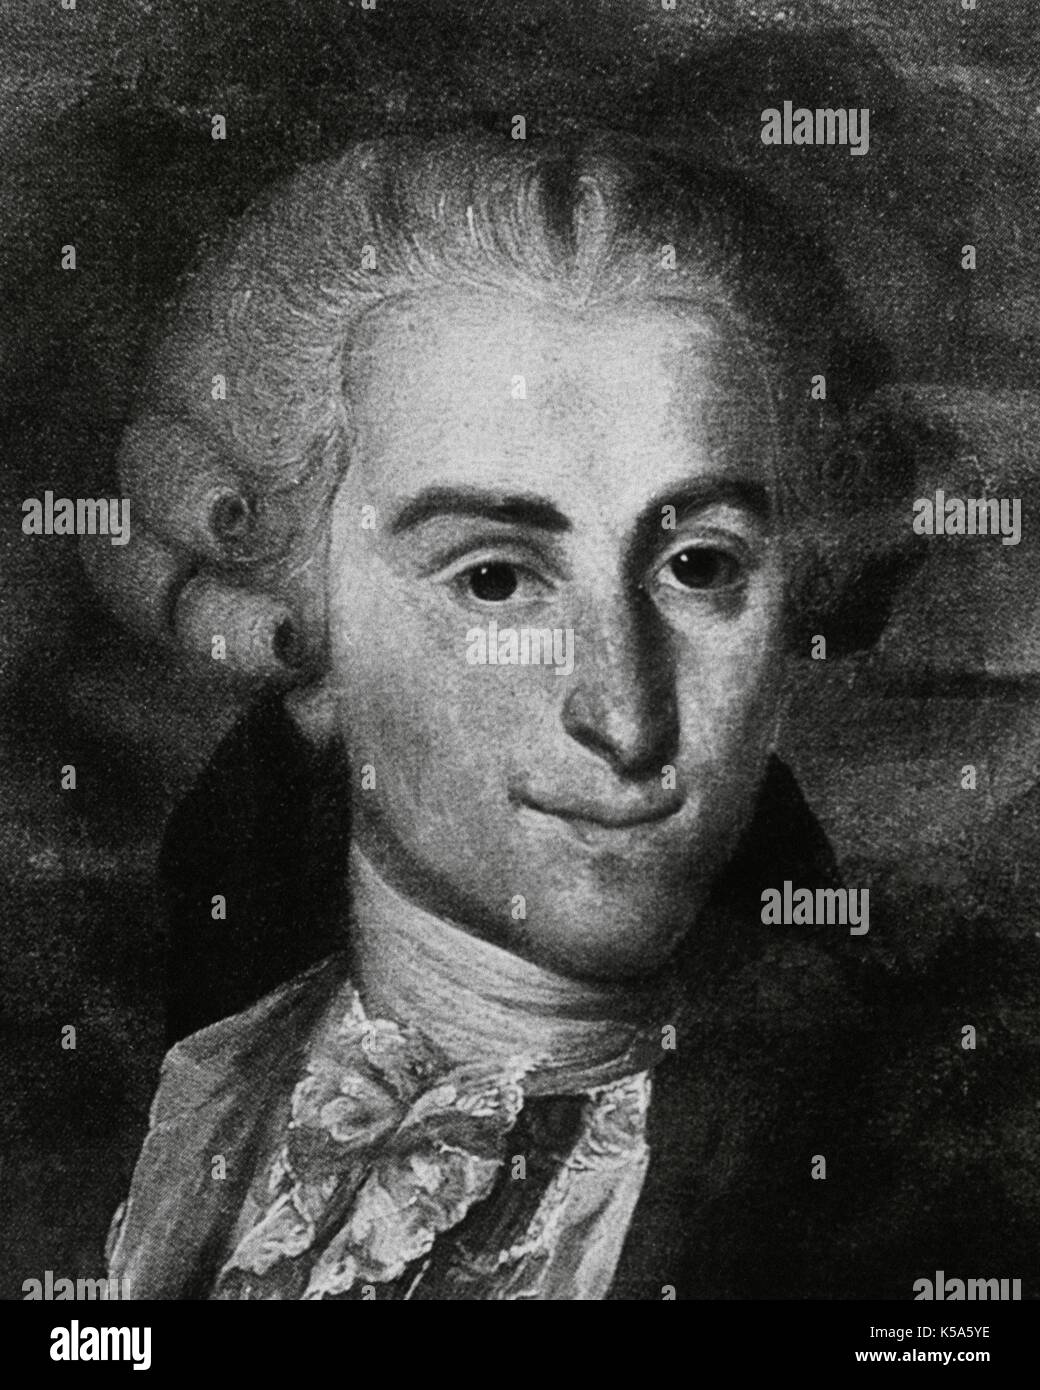 Giovanni Battista Sammartini (1700-1775). Italian composer and choirmaster of the Baroque. Illustration from a portrait by Domenico Riccardi. Stock Photo